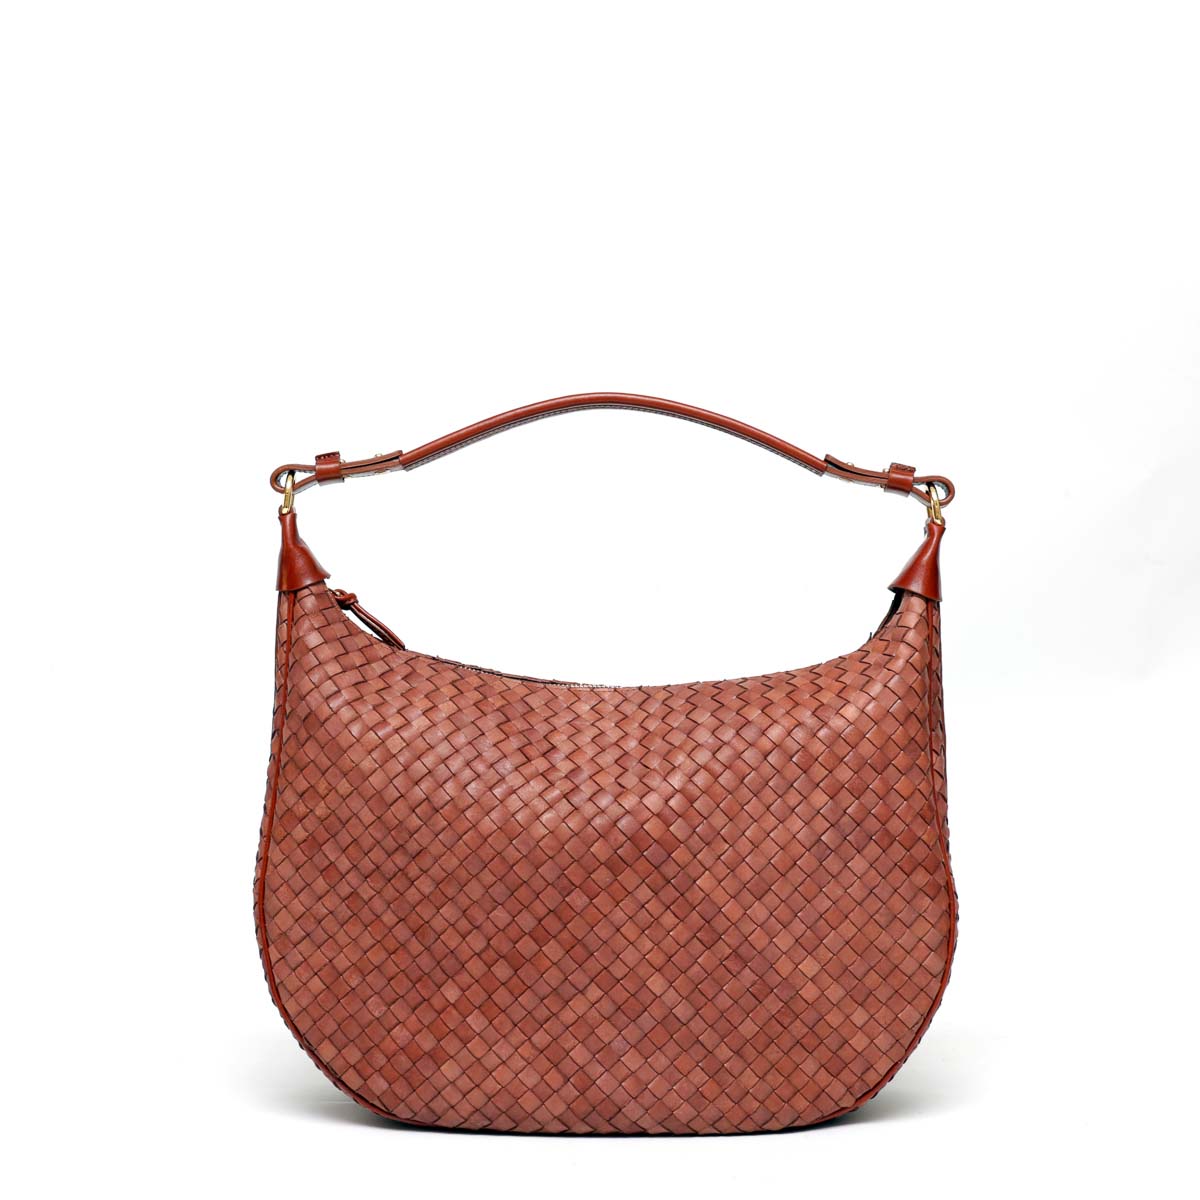 Alba, borsa da donna a spalla in pelle intrecciata marrone, prodotta da Pianigiani.